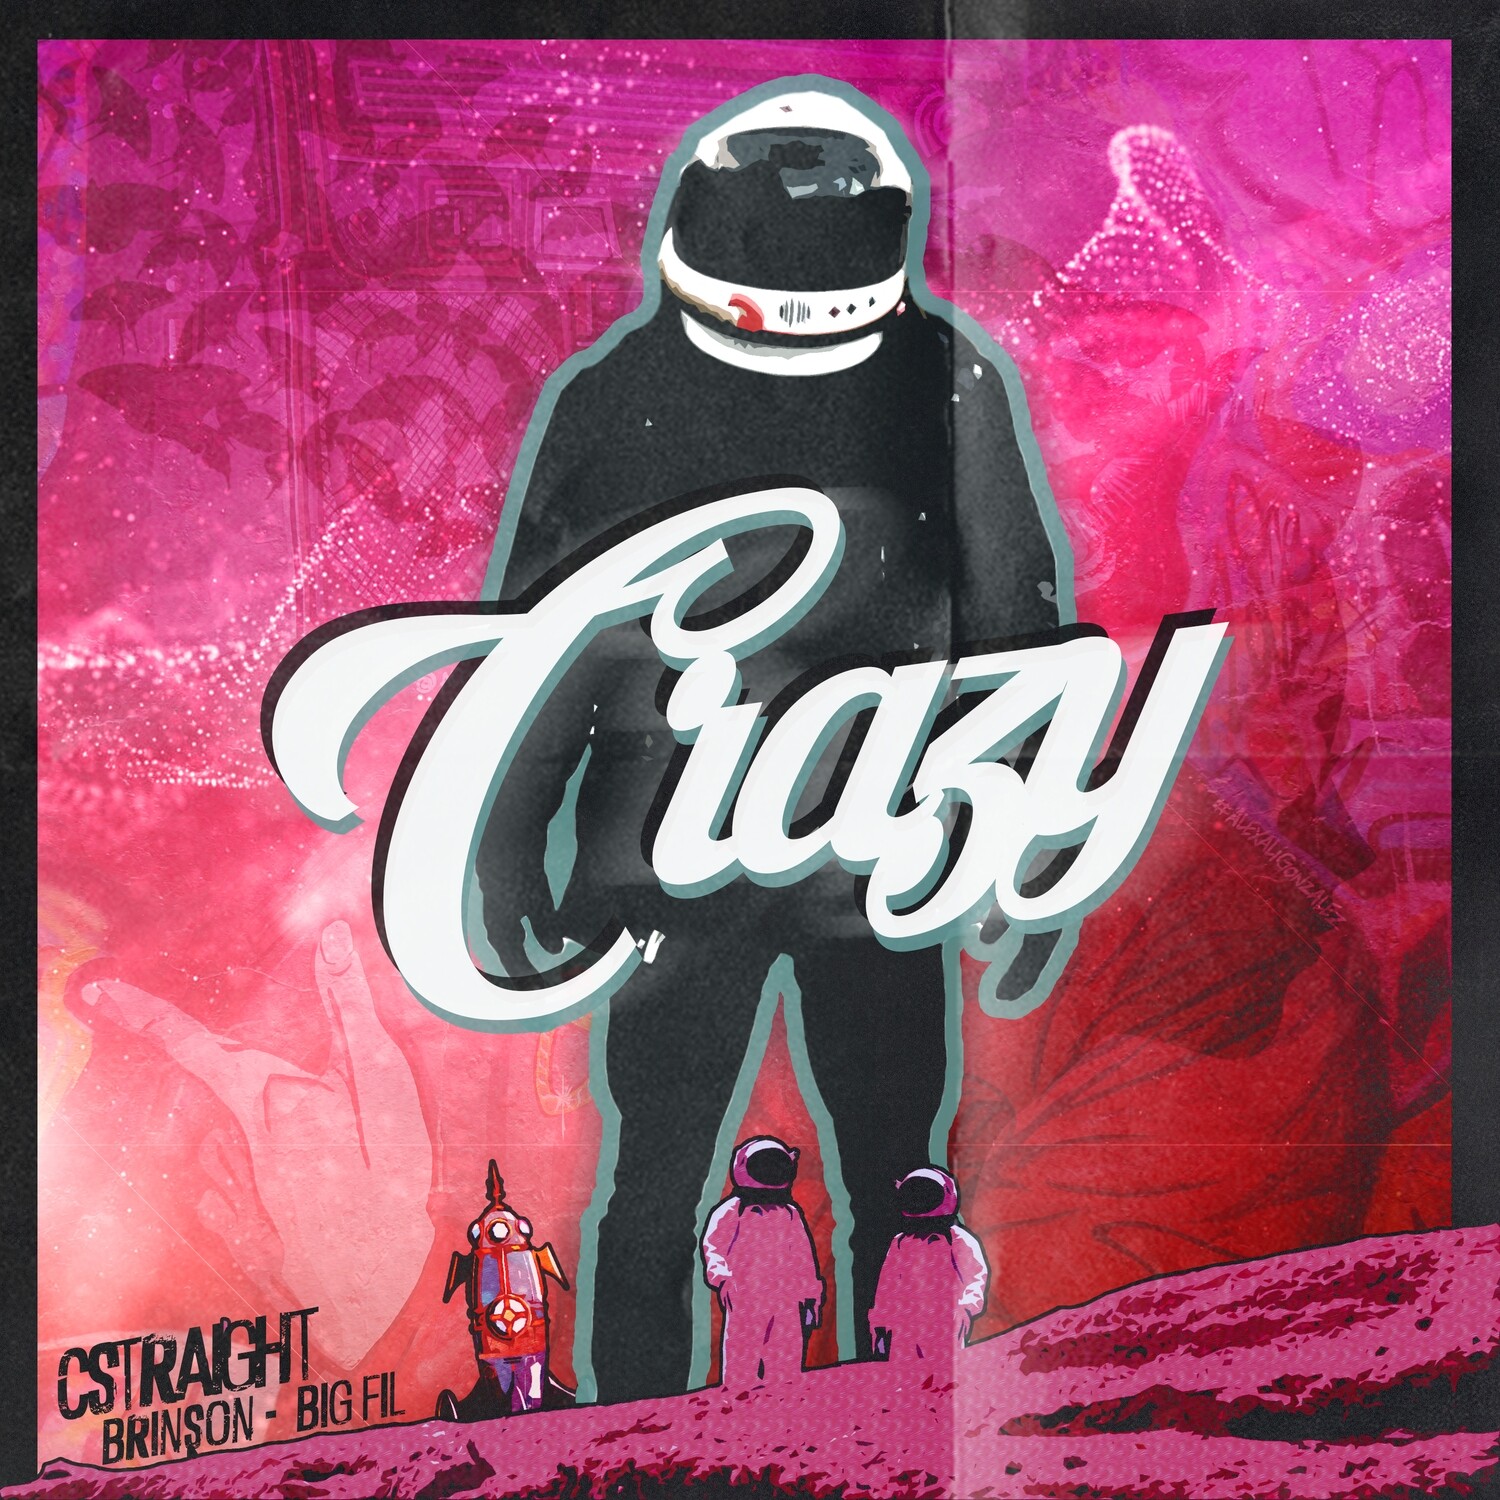 Cstraight "Crazy" ft. Brinson, Big Fil